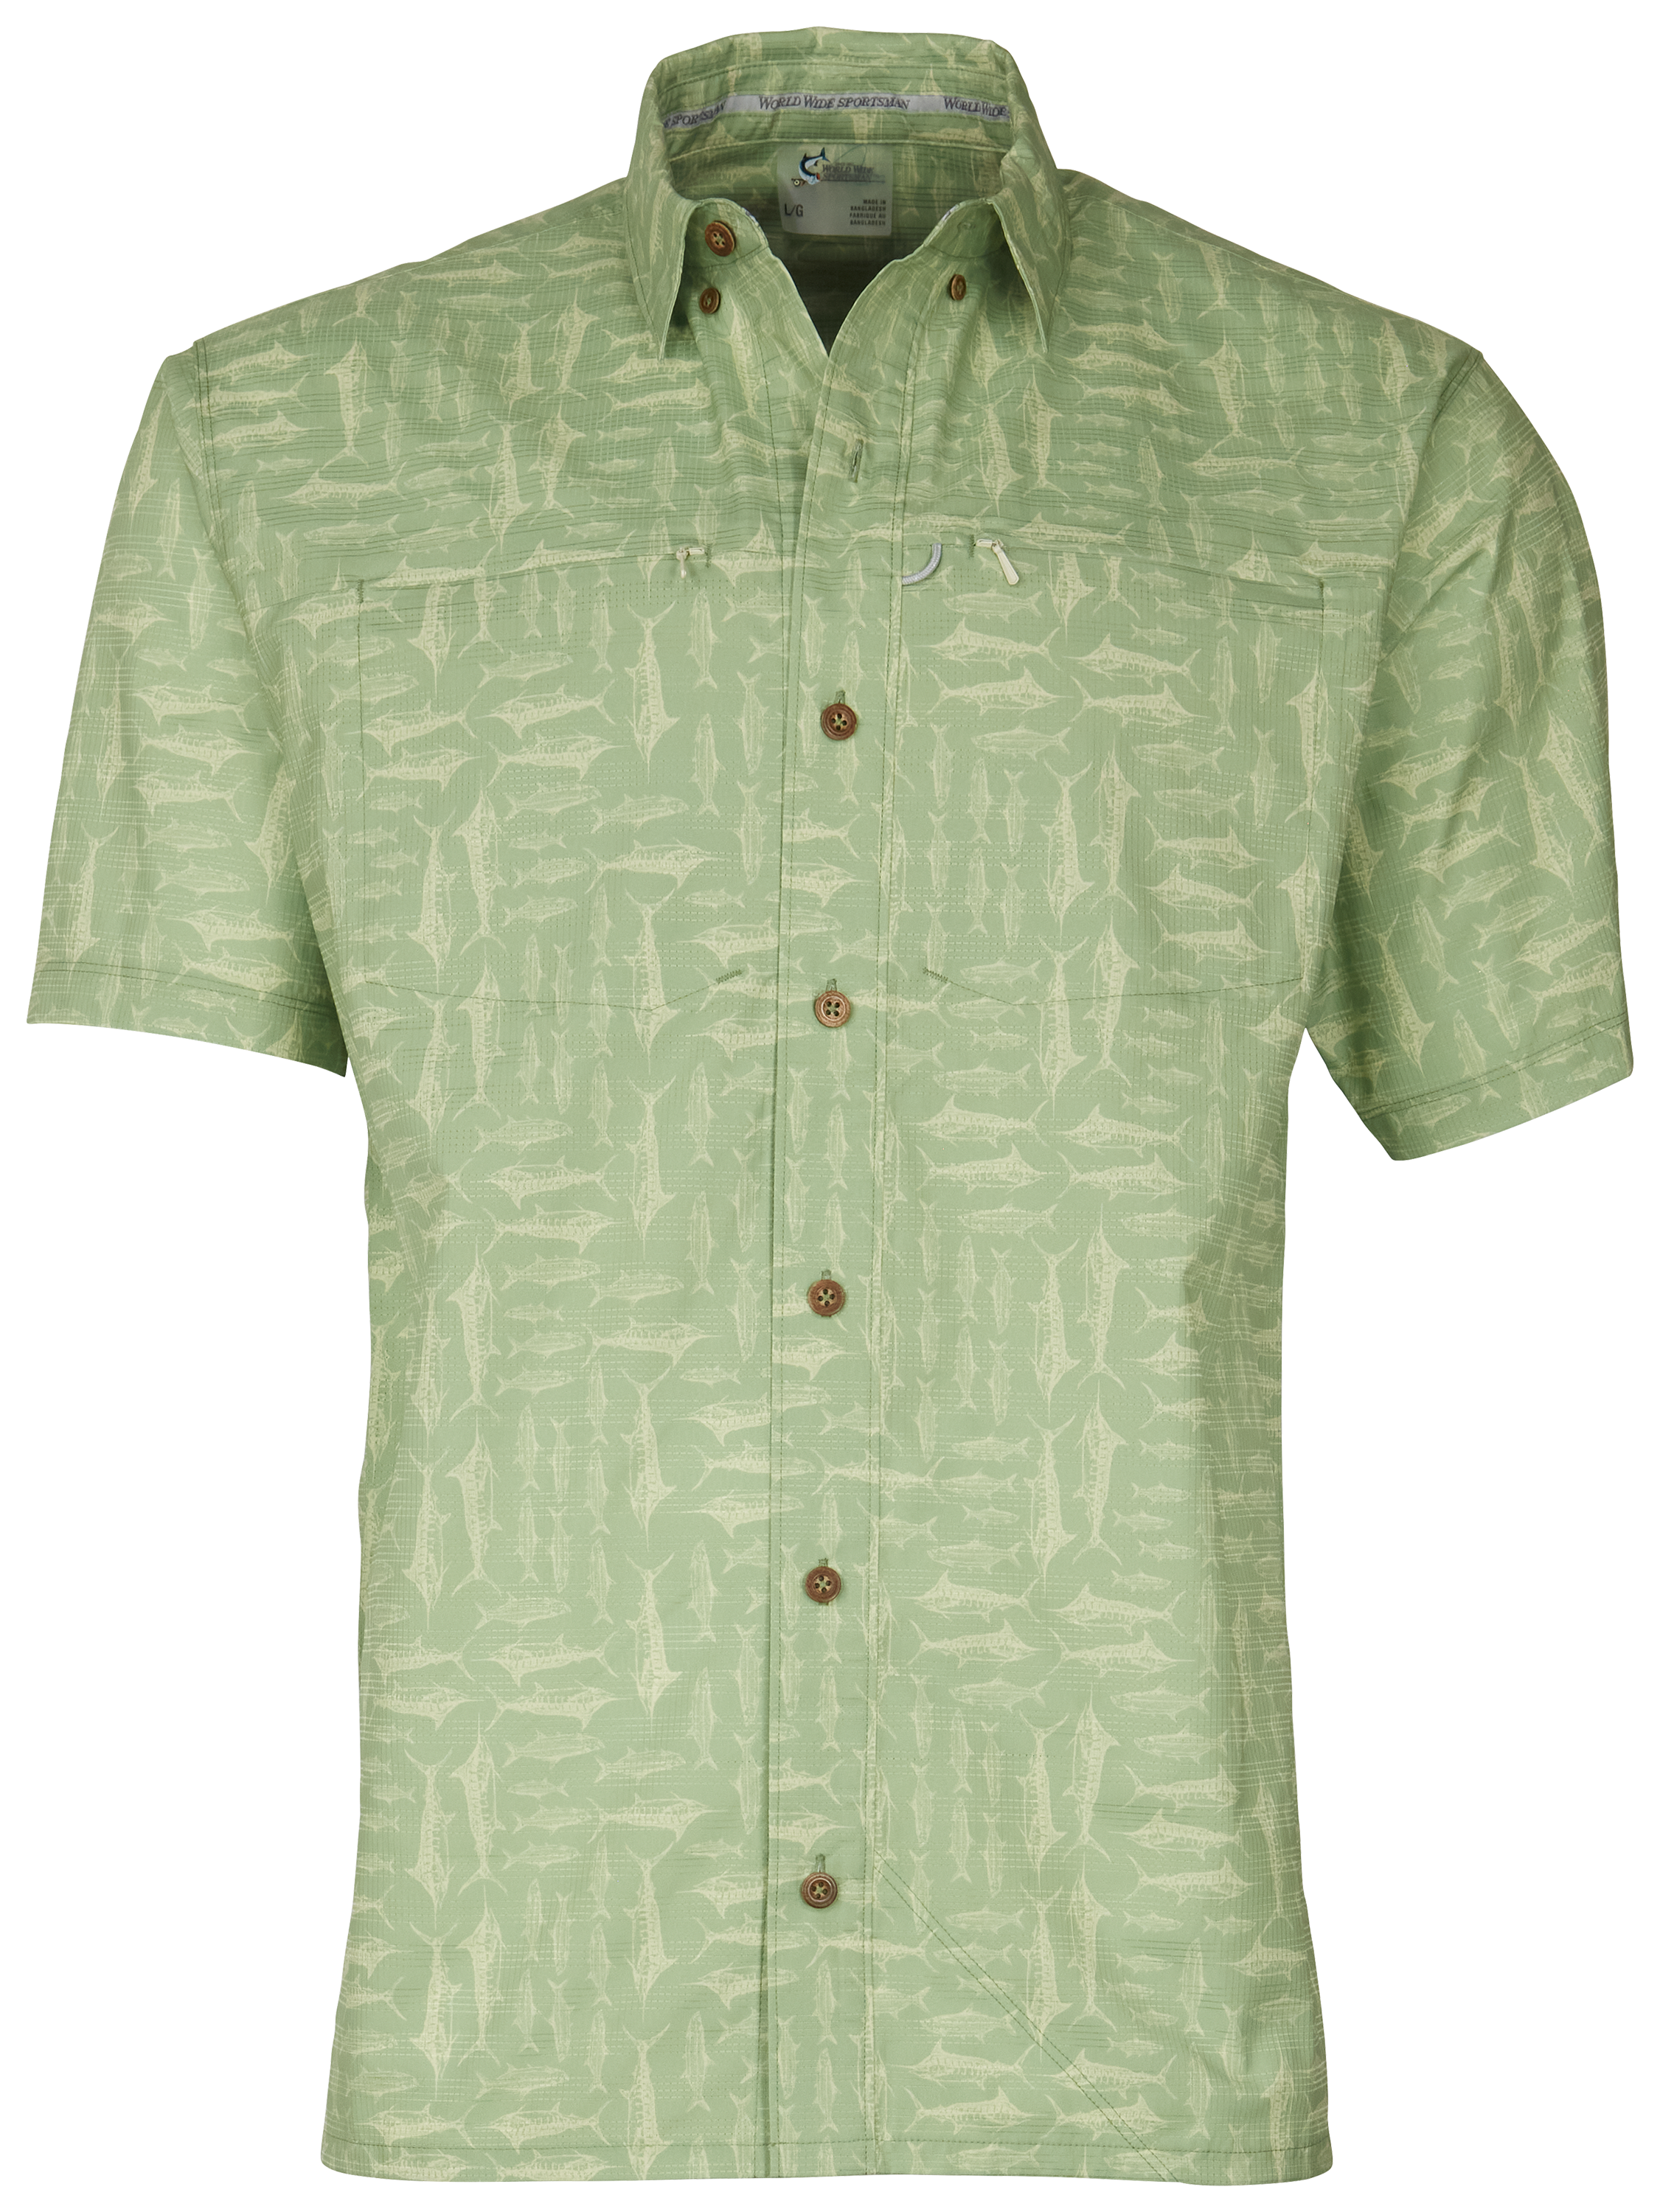 World Wide Sportsman Seacrest Print Short-Sleeve Button-Down Shirt for Men - Quiet Green Salt Rub - M